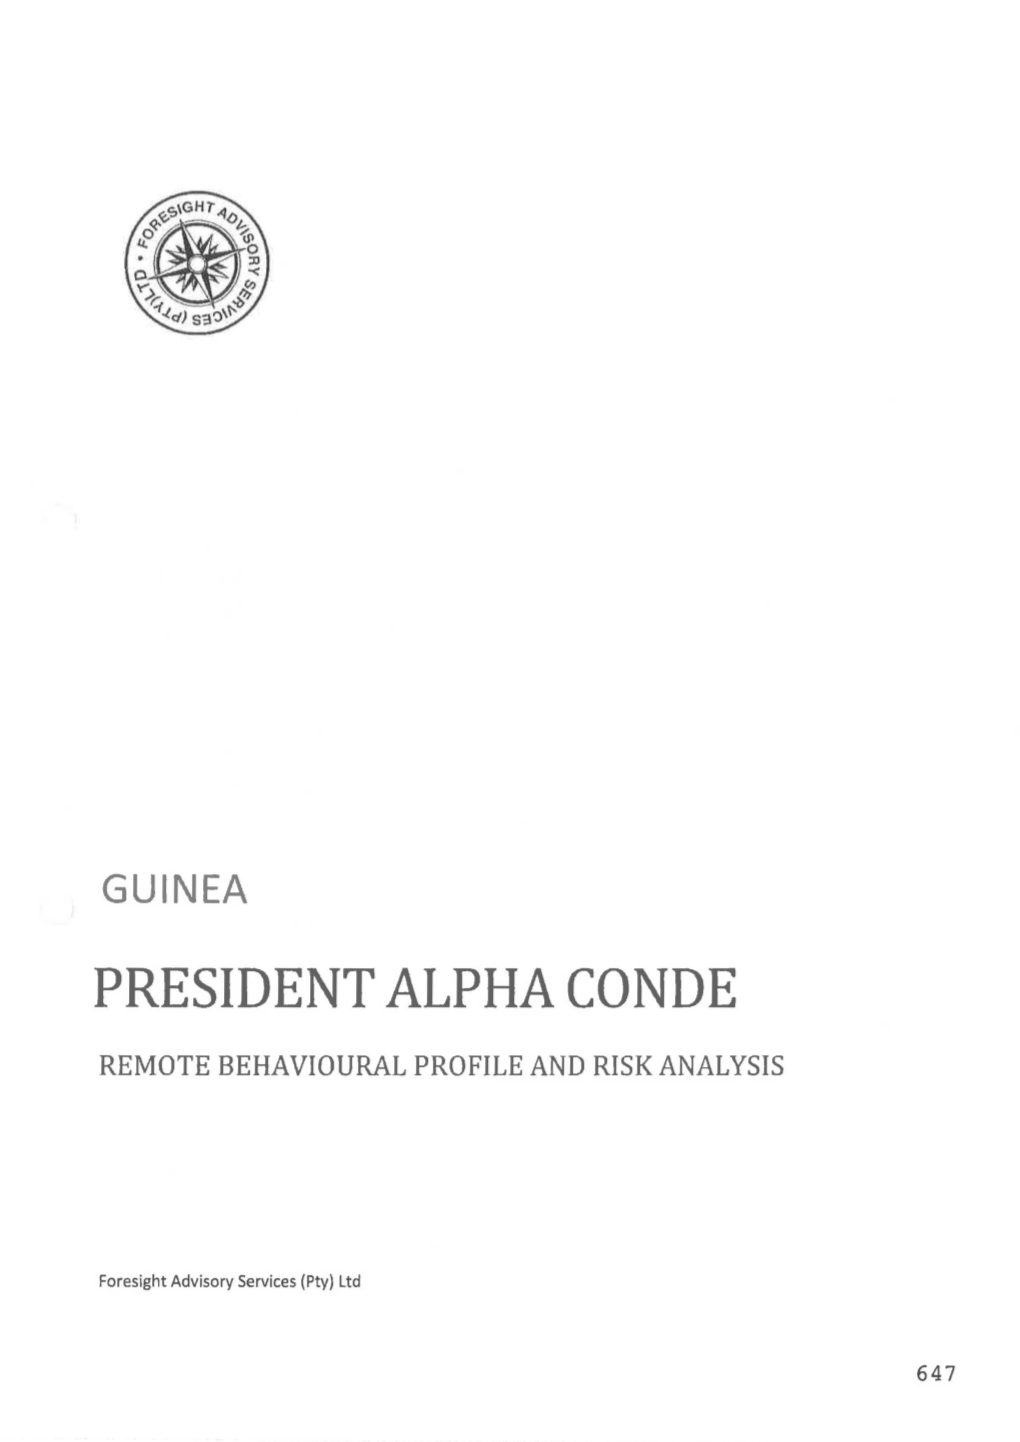 President Alpha Conde